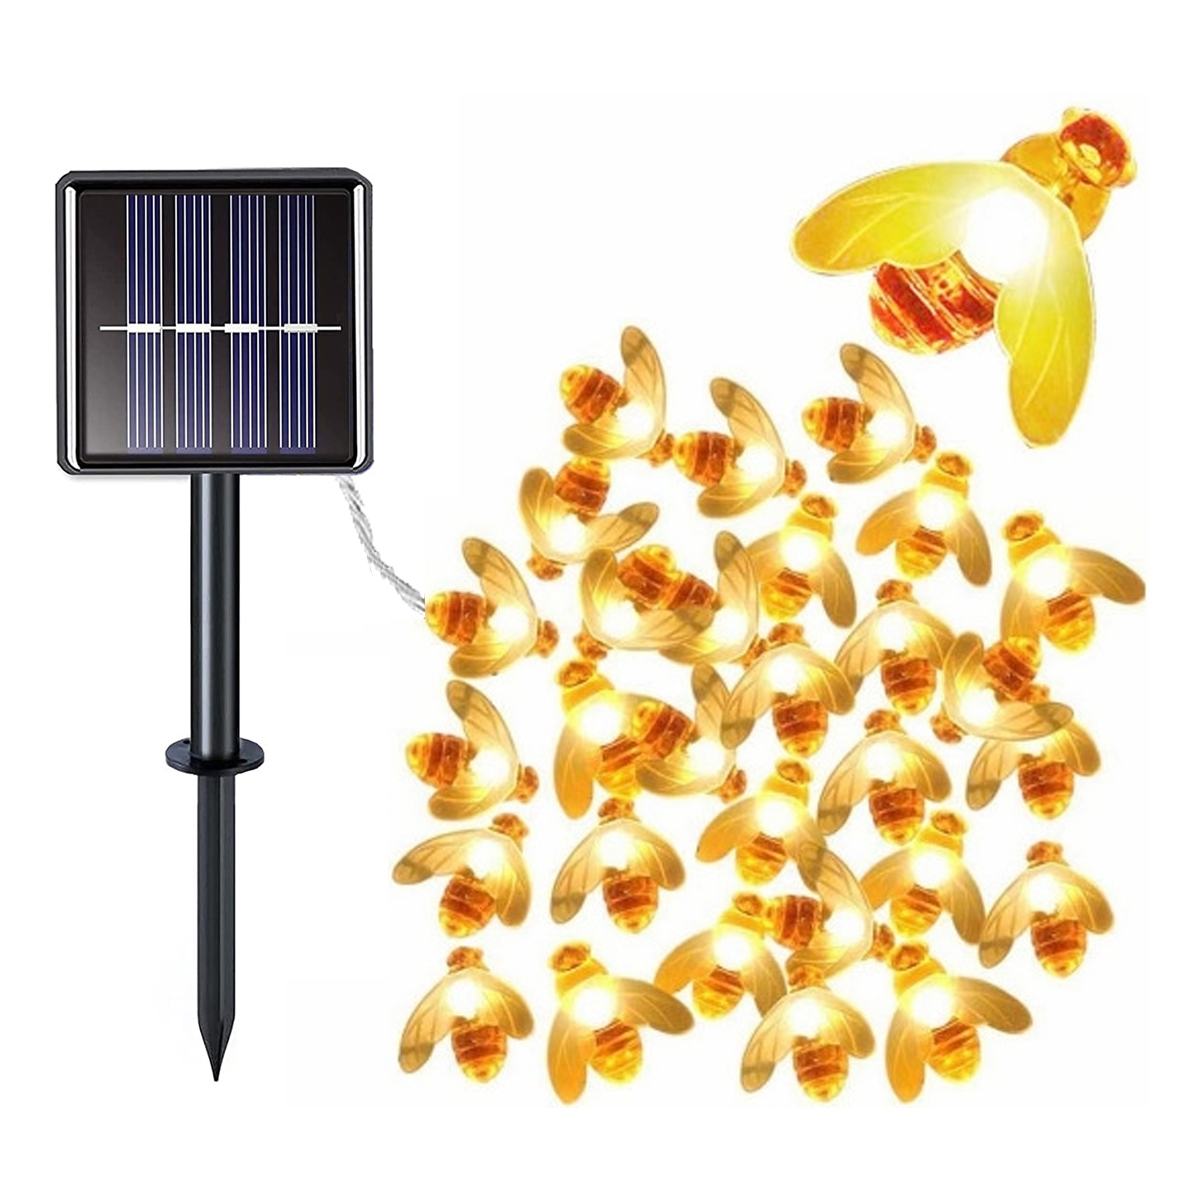 Kleine Lichter LANOR Warmweiß Biene Lichterkette, Solar-Lichterketten, warmweiß Lichterketten,7m 50 Honigbienen-Lichterketten,LED-Solare